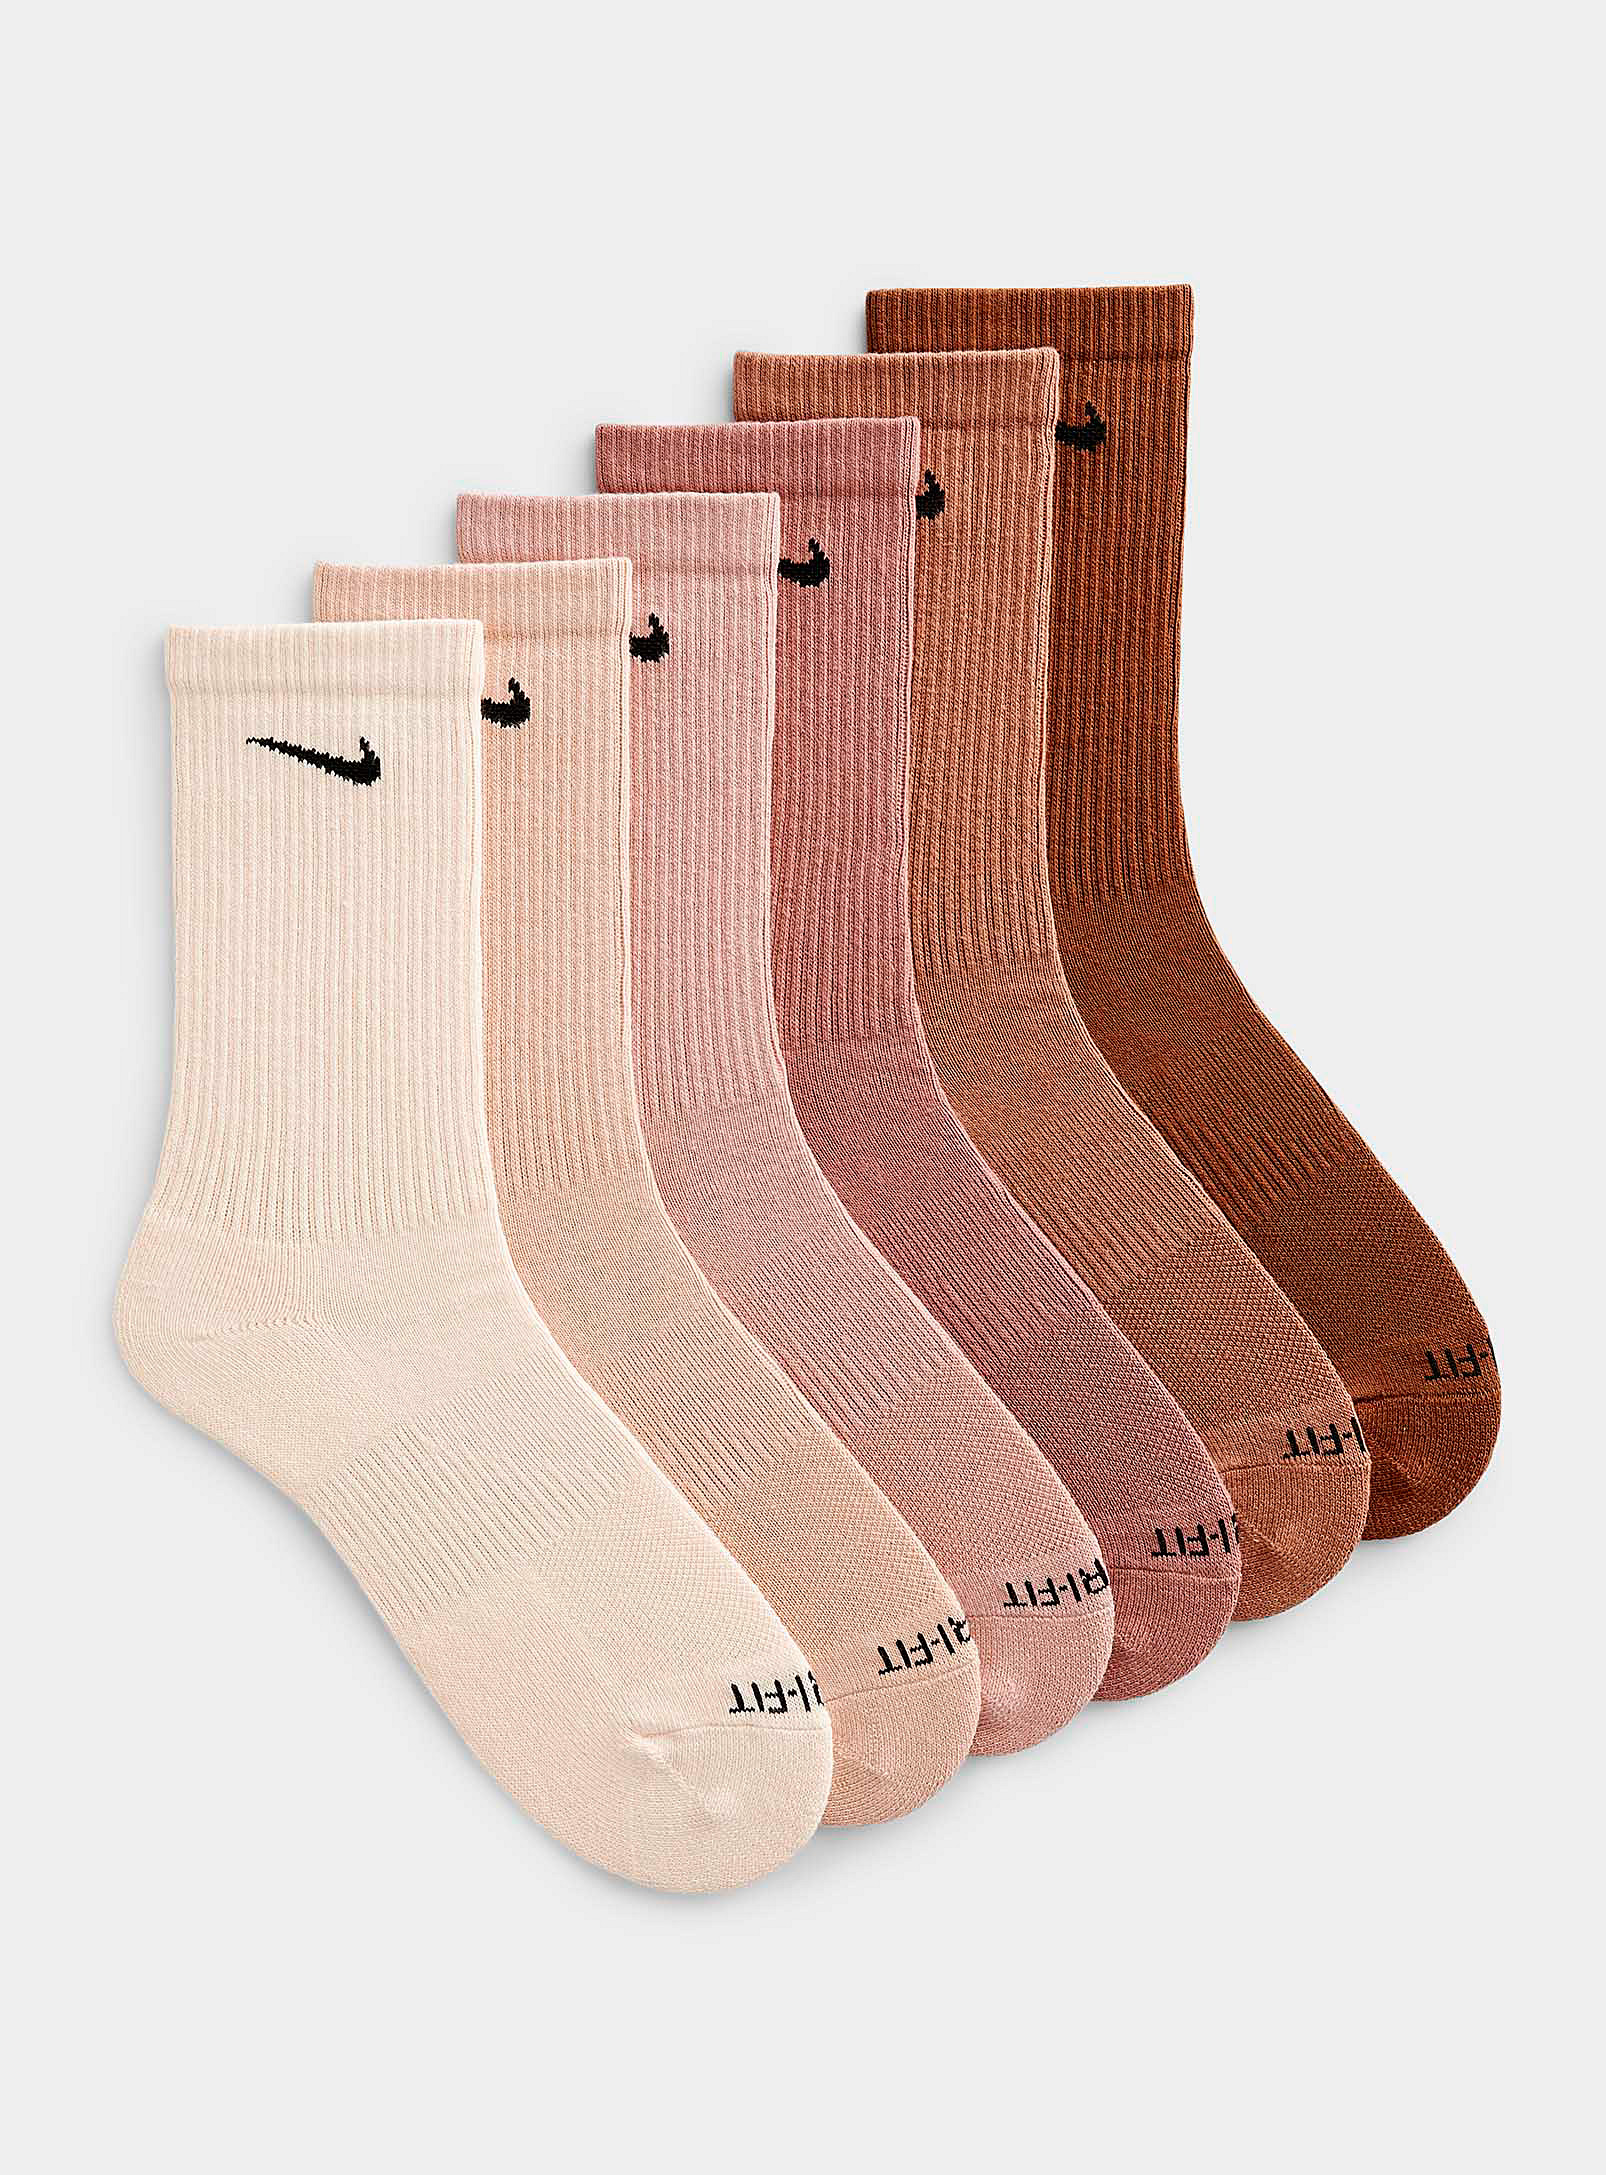 Nike Everyday Plus Powdery Pink Socks 6-pack In Patterned Brown